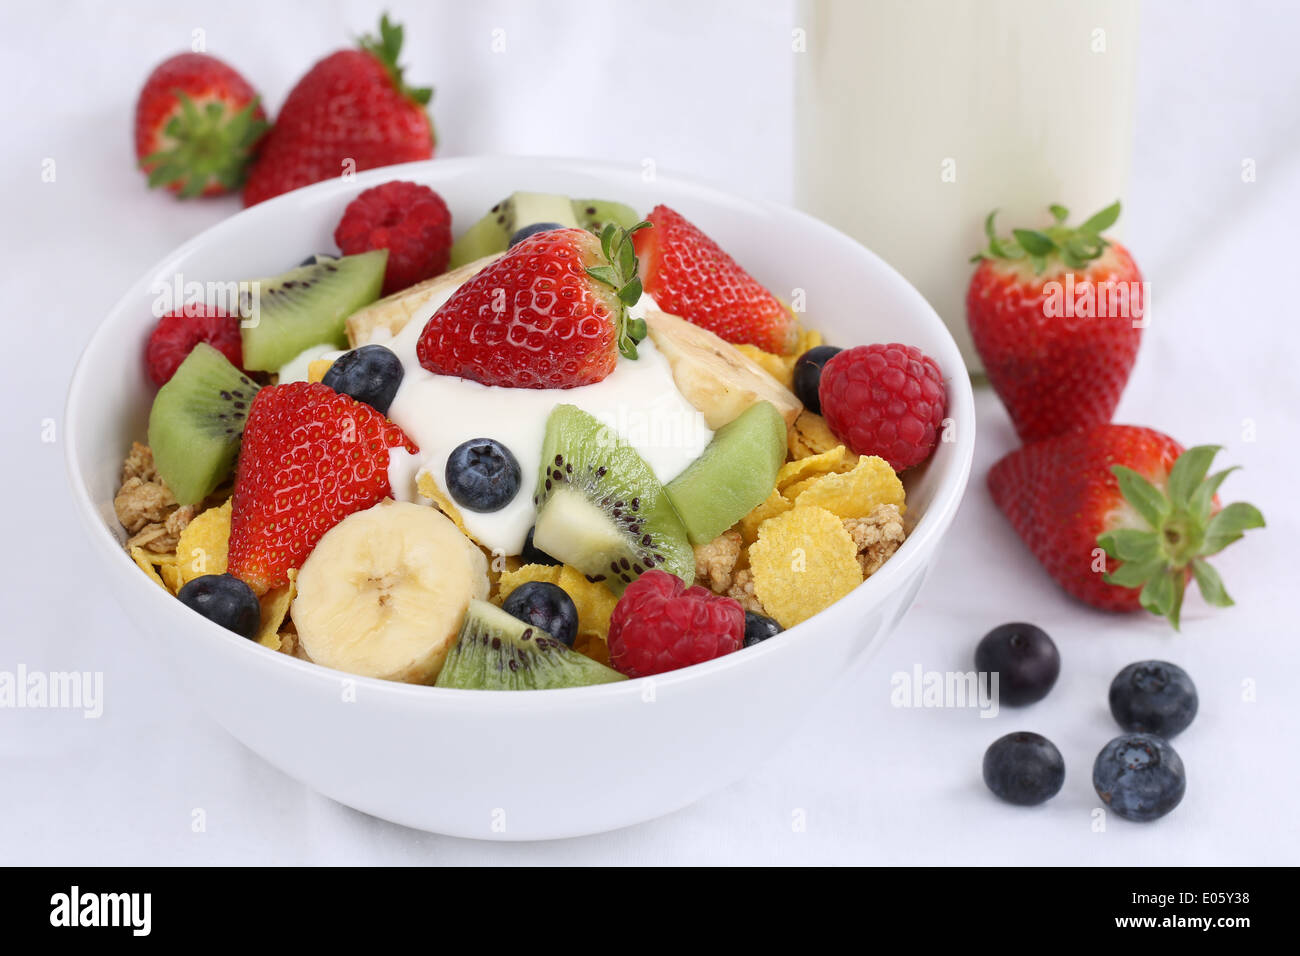 Fruit muesli with yogurt, strawberries, banana, raspberries, kiwi and blueberries for breakfast Stock Photo